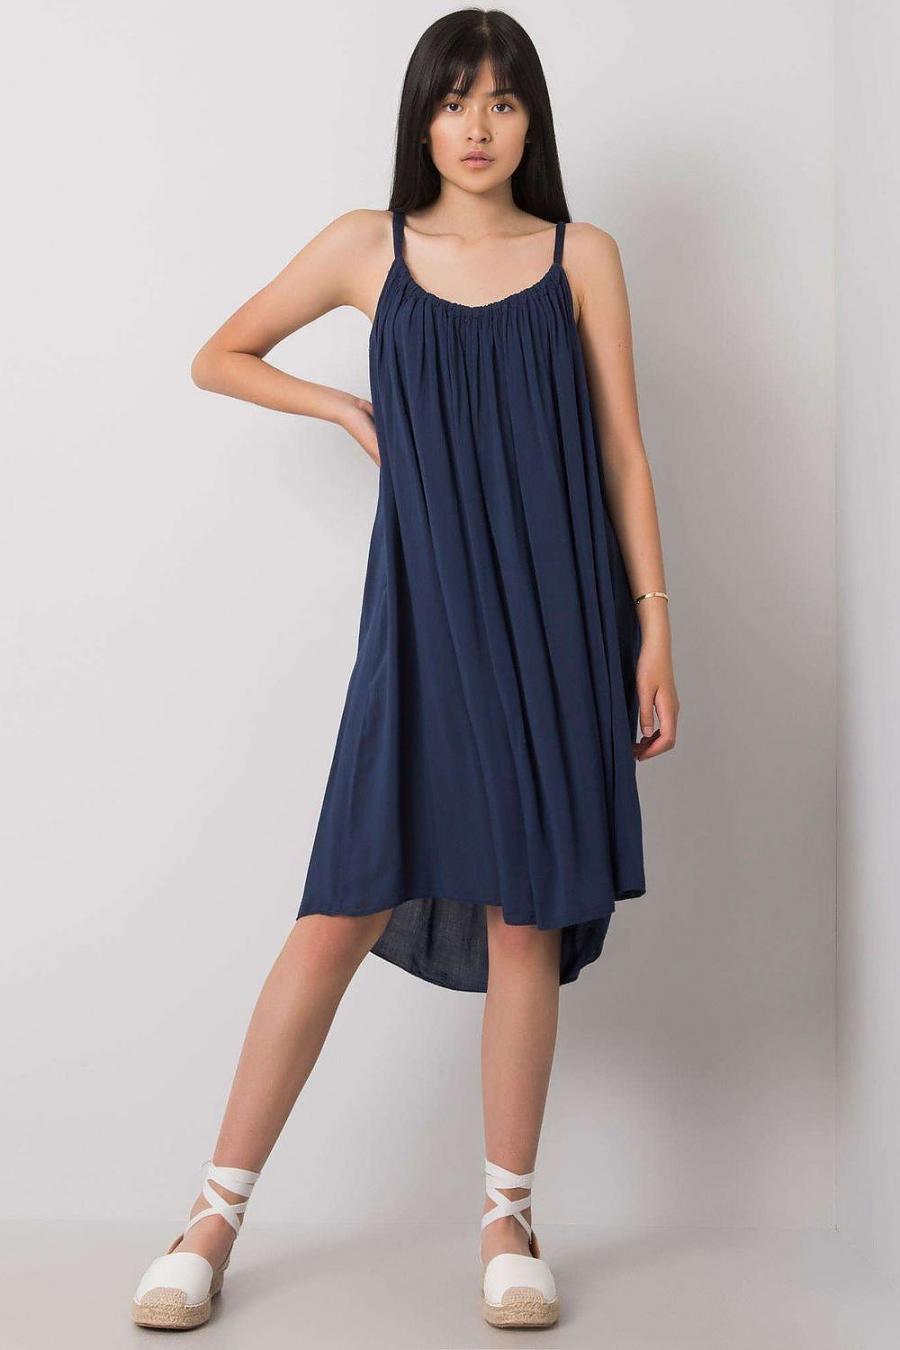 Ostatní značky šaty dámské 165036 - Tmavě modrá - velikost S